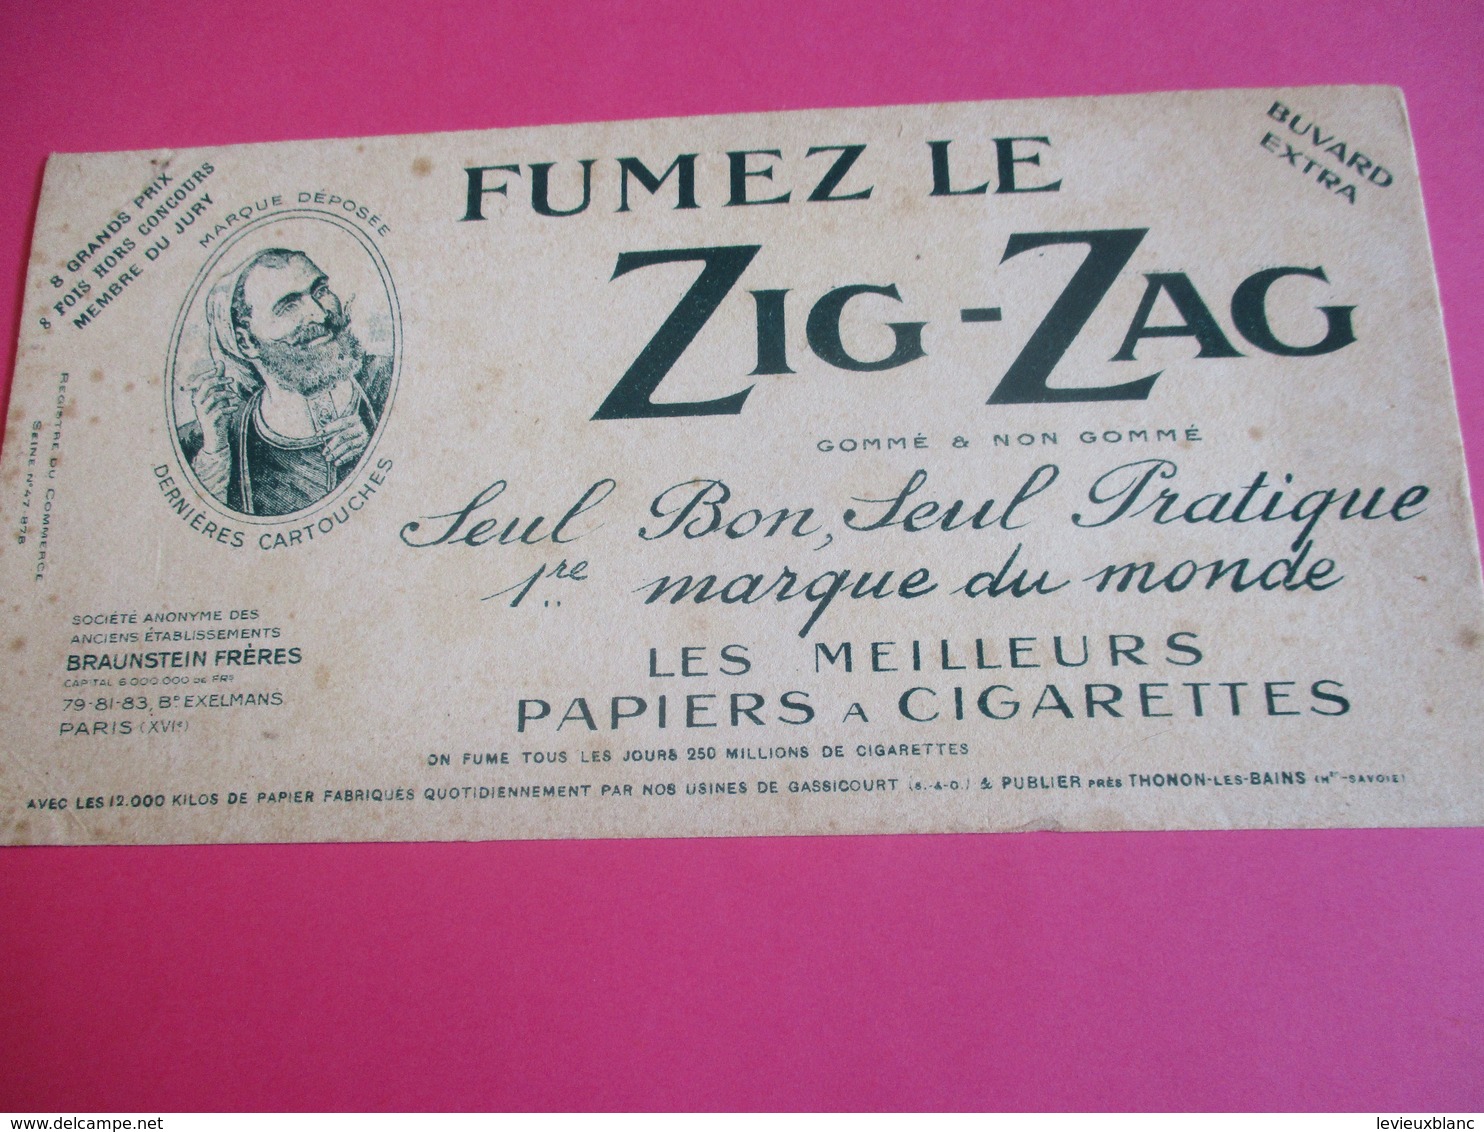 Buvard Extra/ Papier à Cigarette/ ZIG-ZAG/Fumez Le Zig-zag/1ére Marque Du Monde/Braunstein Fréres /1930-1950   BUV290 - Tabak & Cigaretten